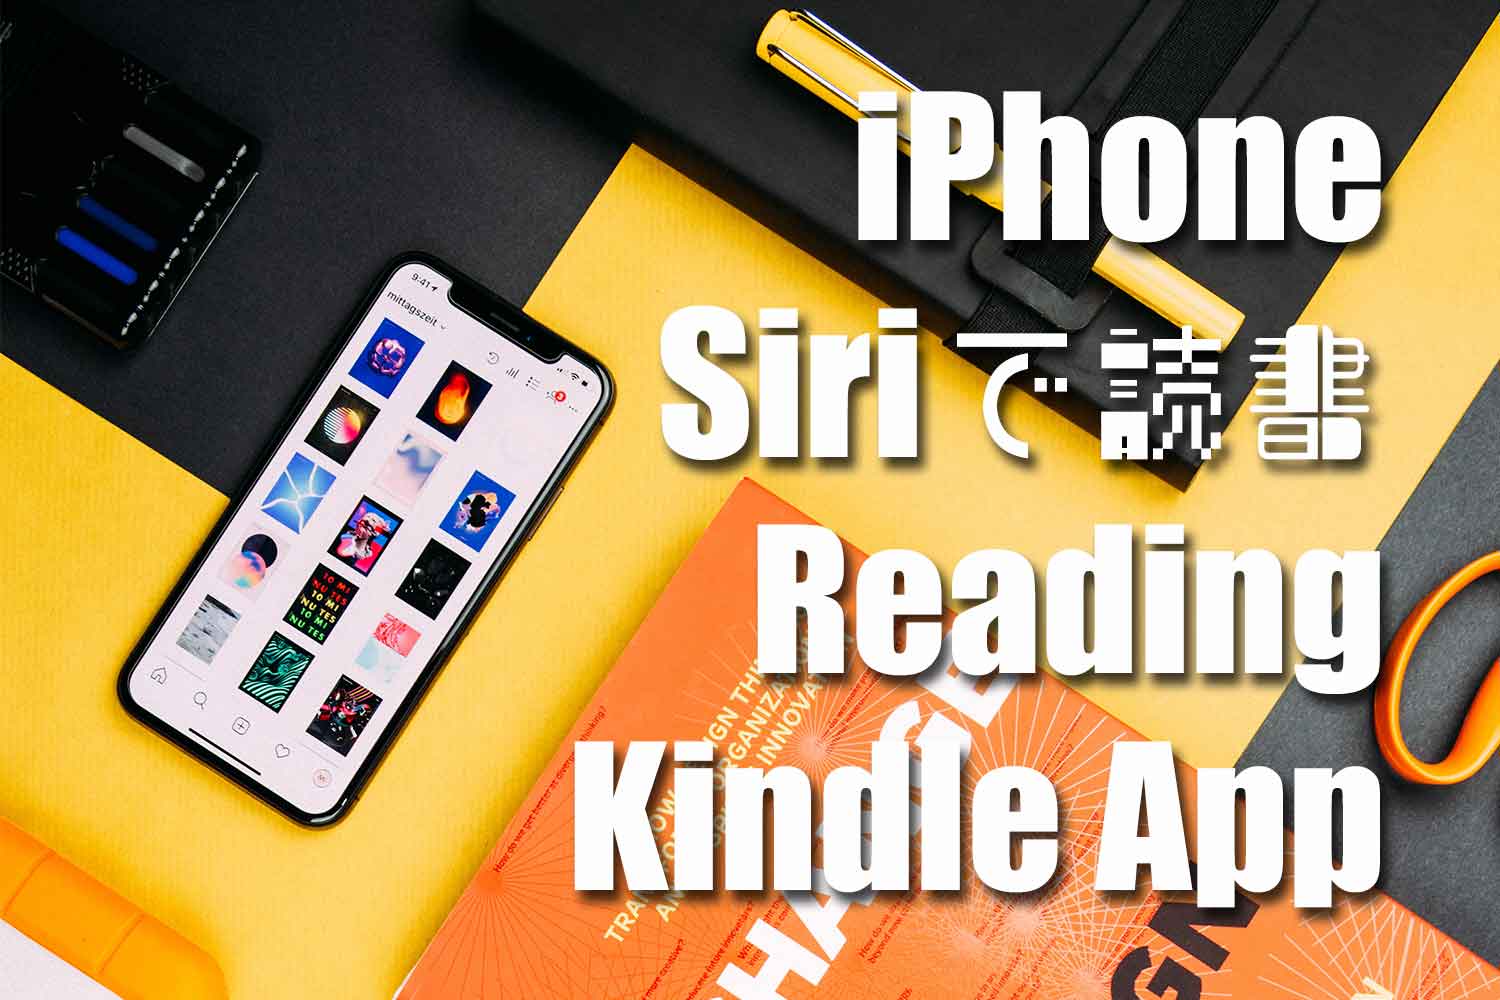 iPhone-Siri-Reading-Kindle-App